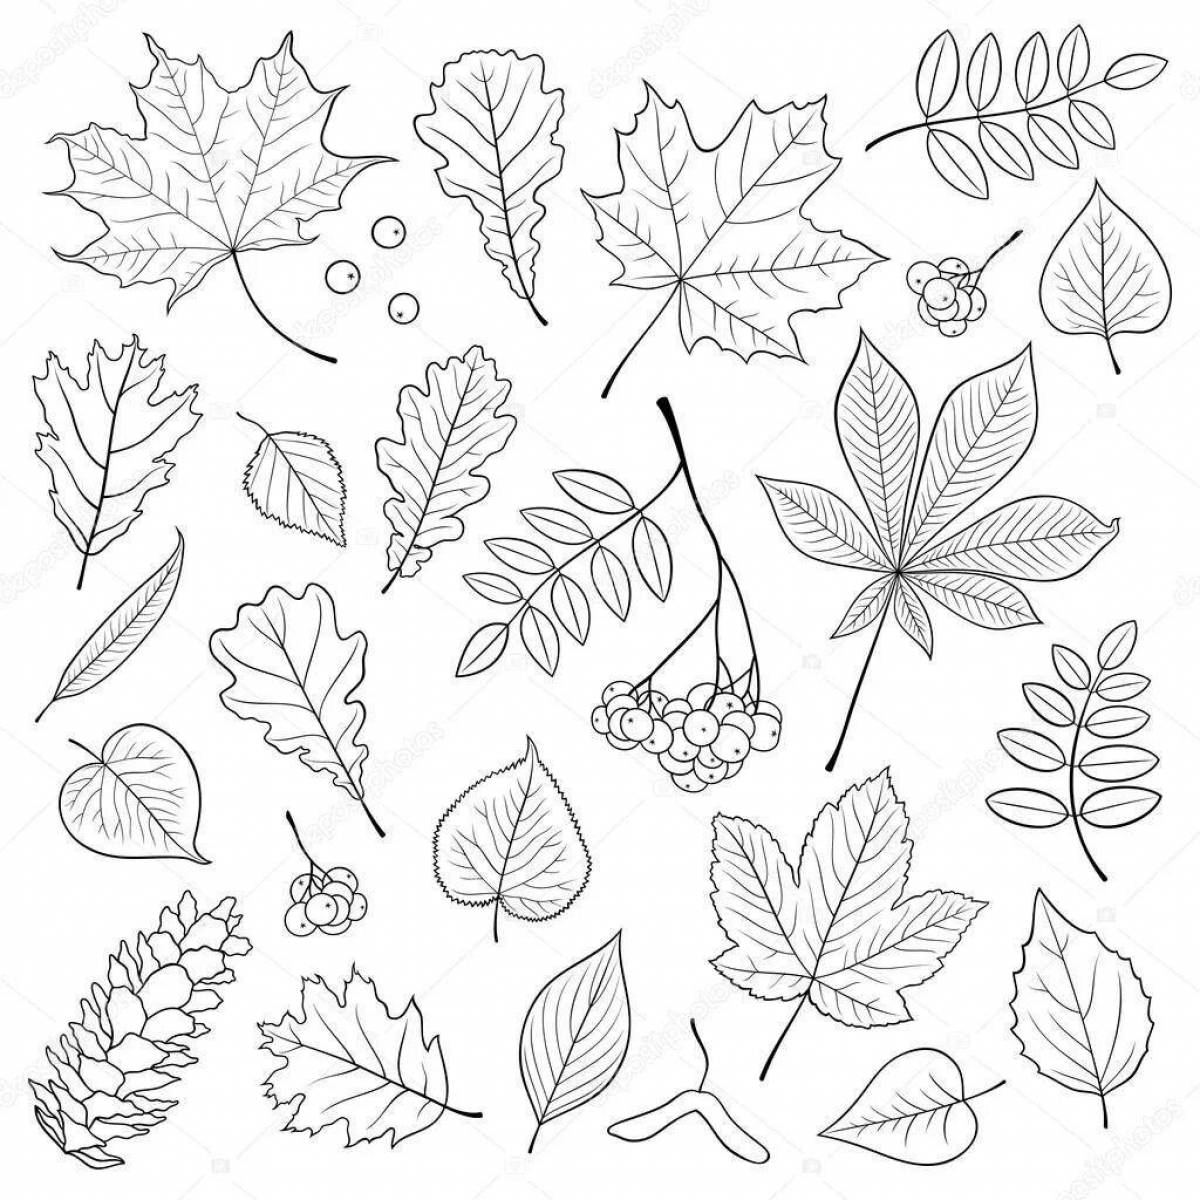 Великолепная страница раскраски с множеством листьев